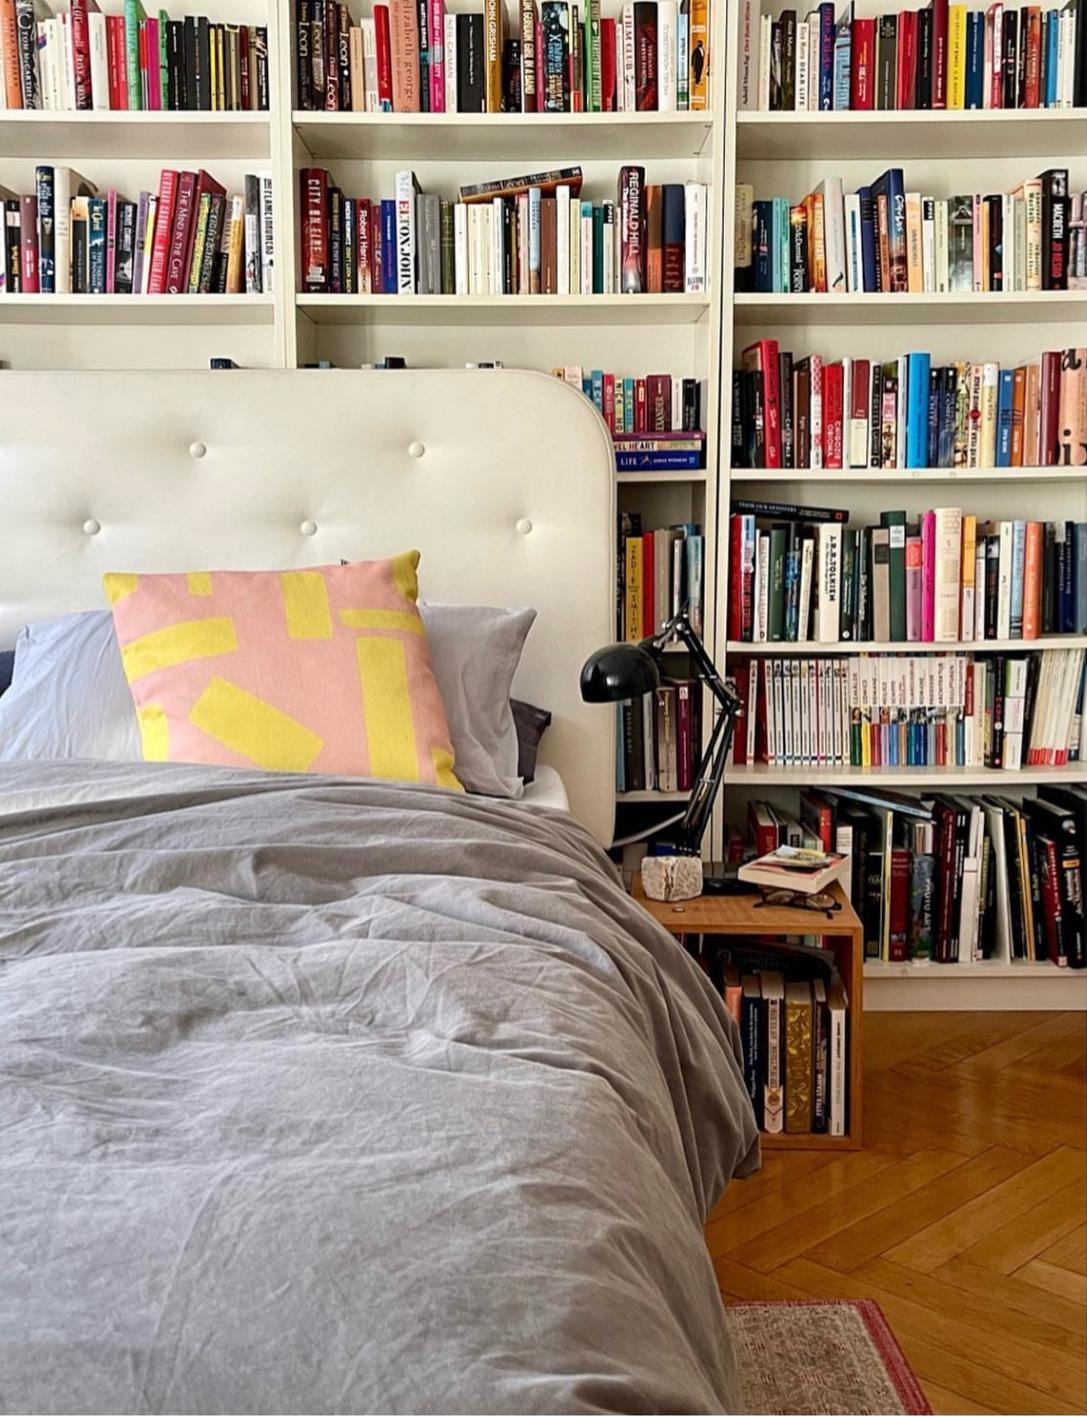 Bücherliebe.

#shelfie #altbau #bücherwand #schlafzimmer #bedroom #bücherliebe